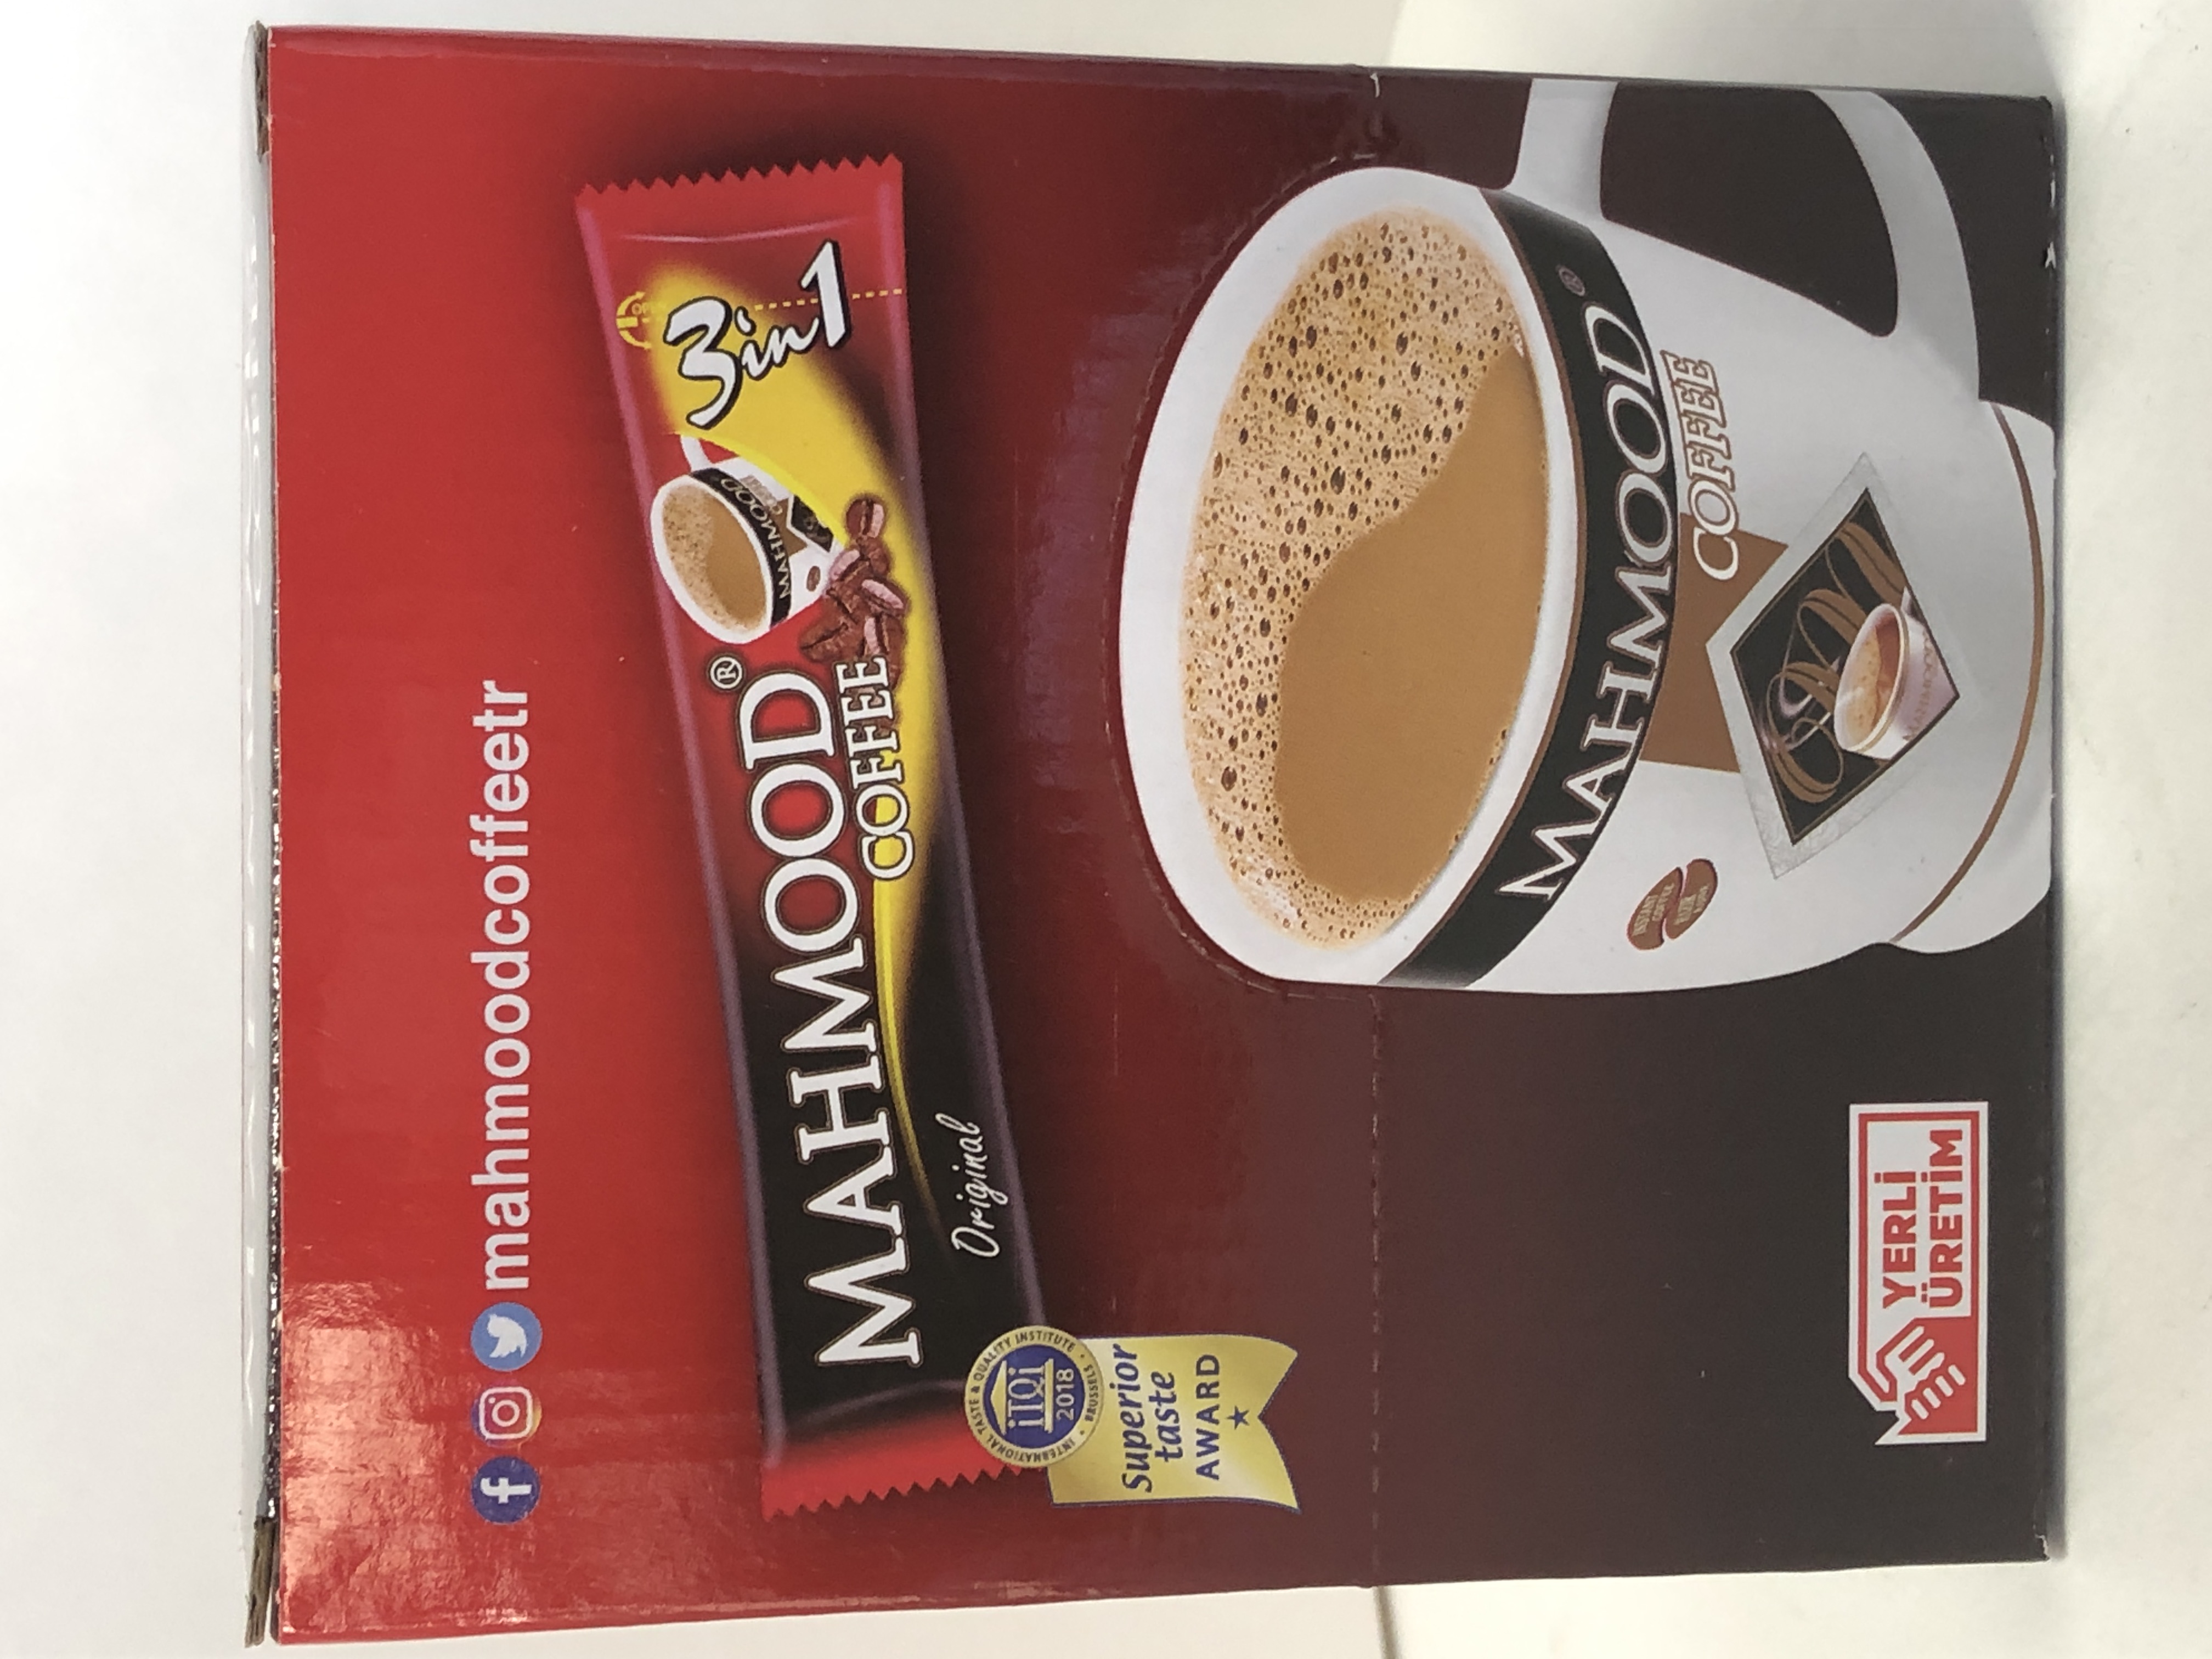 Mahmood 3 in 1 Coffee